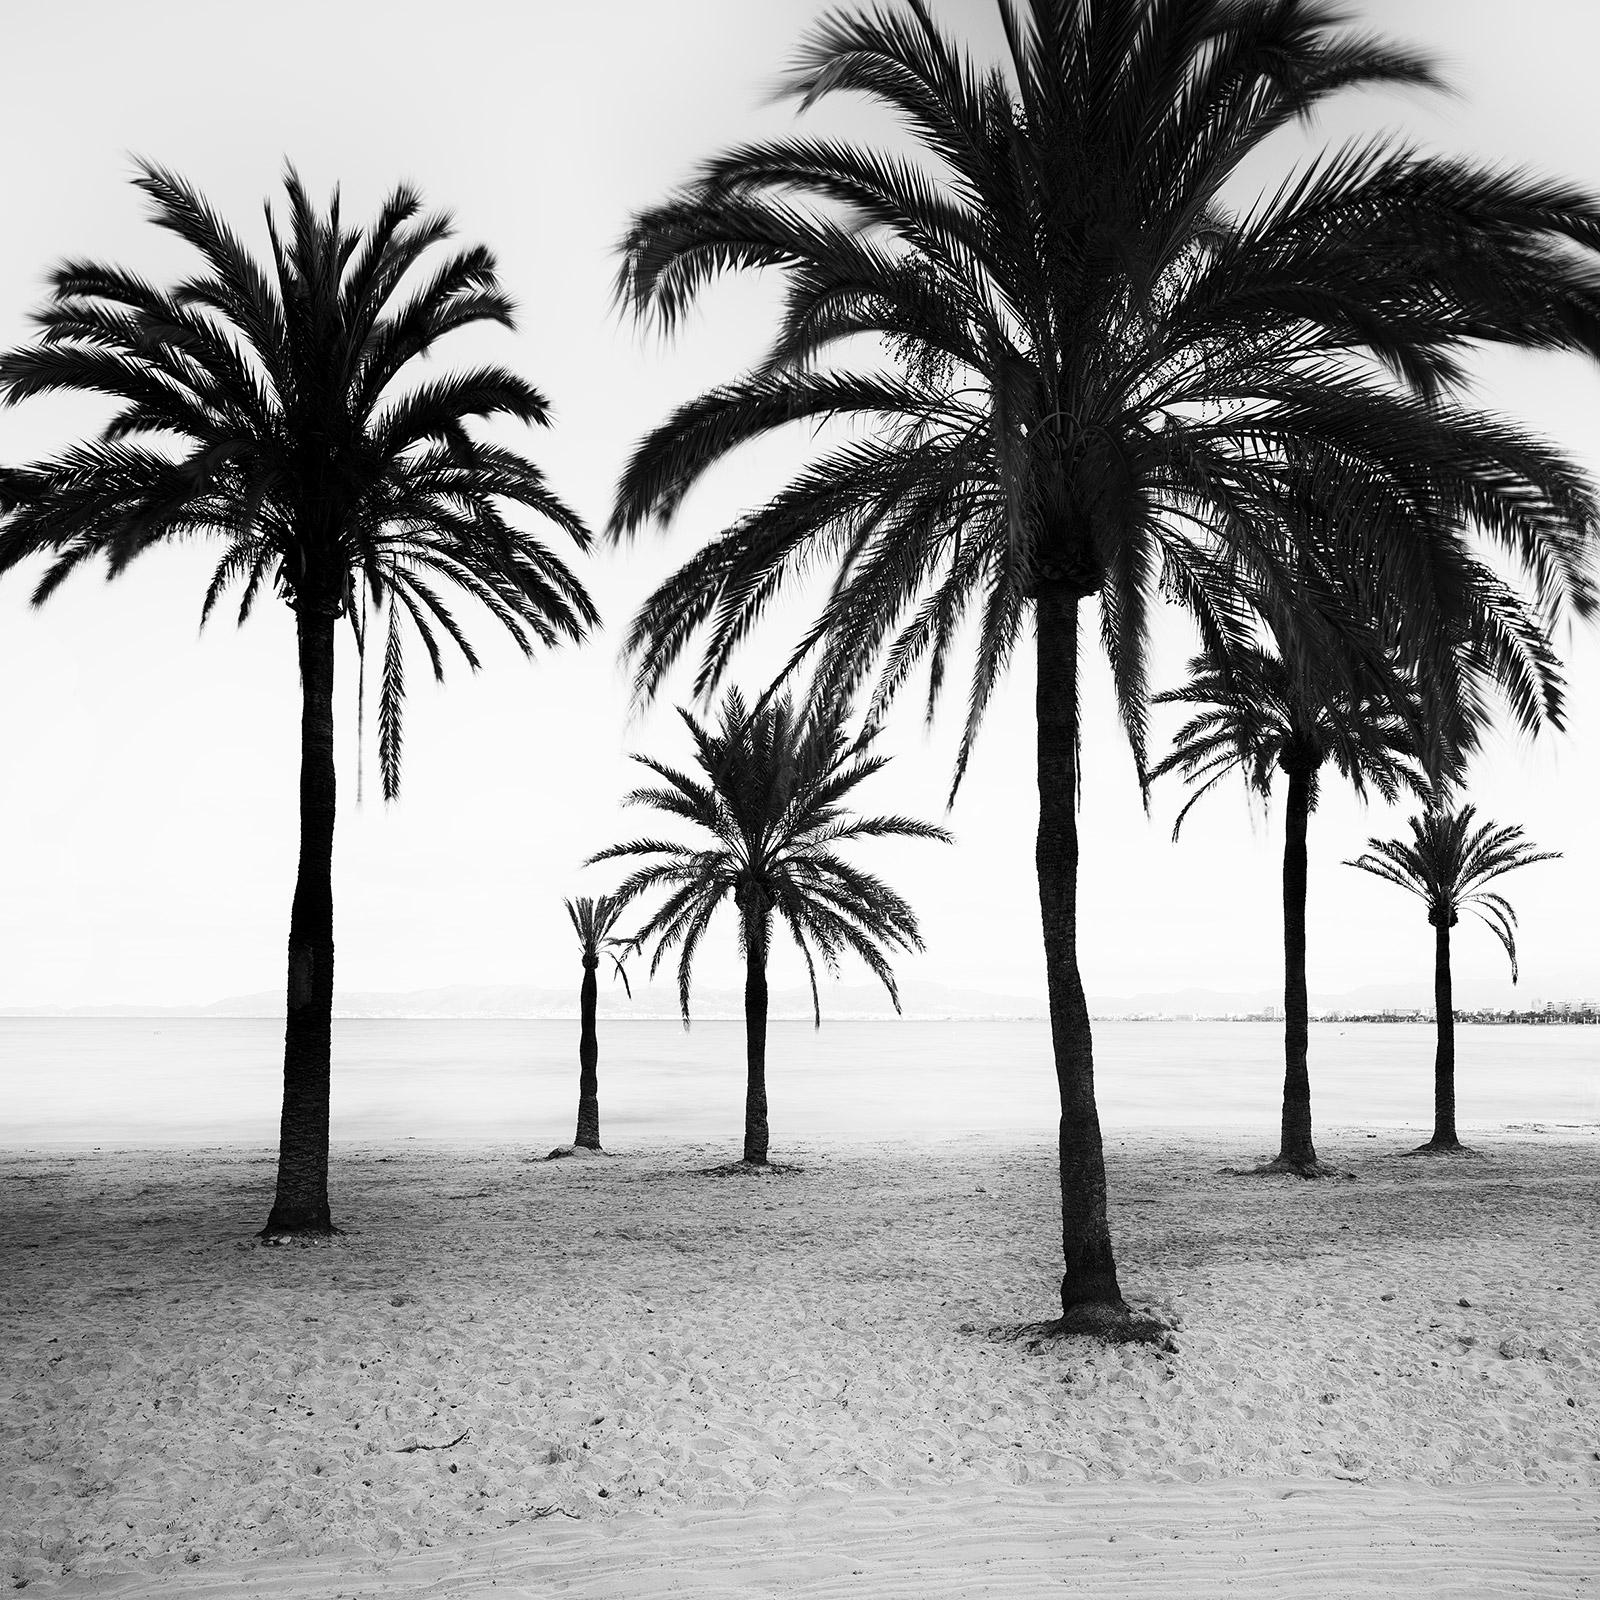 Gerald Berghammer Black and White Photograph – Palmen am Strand von Mallorca, Schwarz-Weiß-Fotografie, Kunstlandschaft